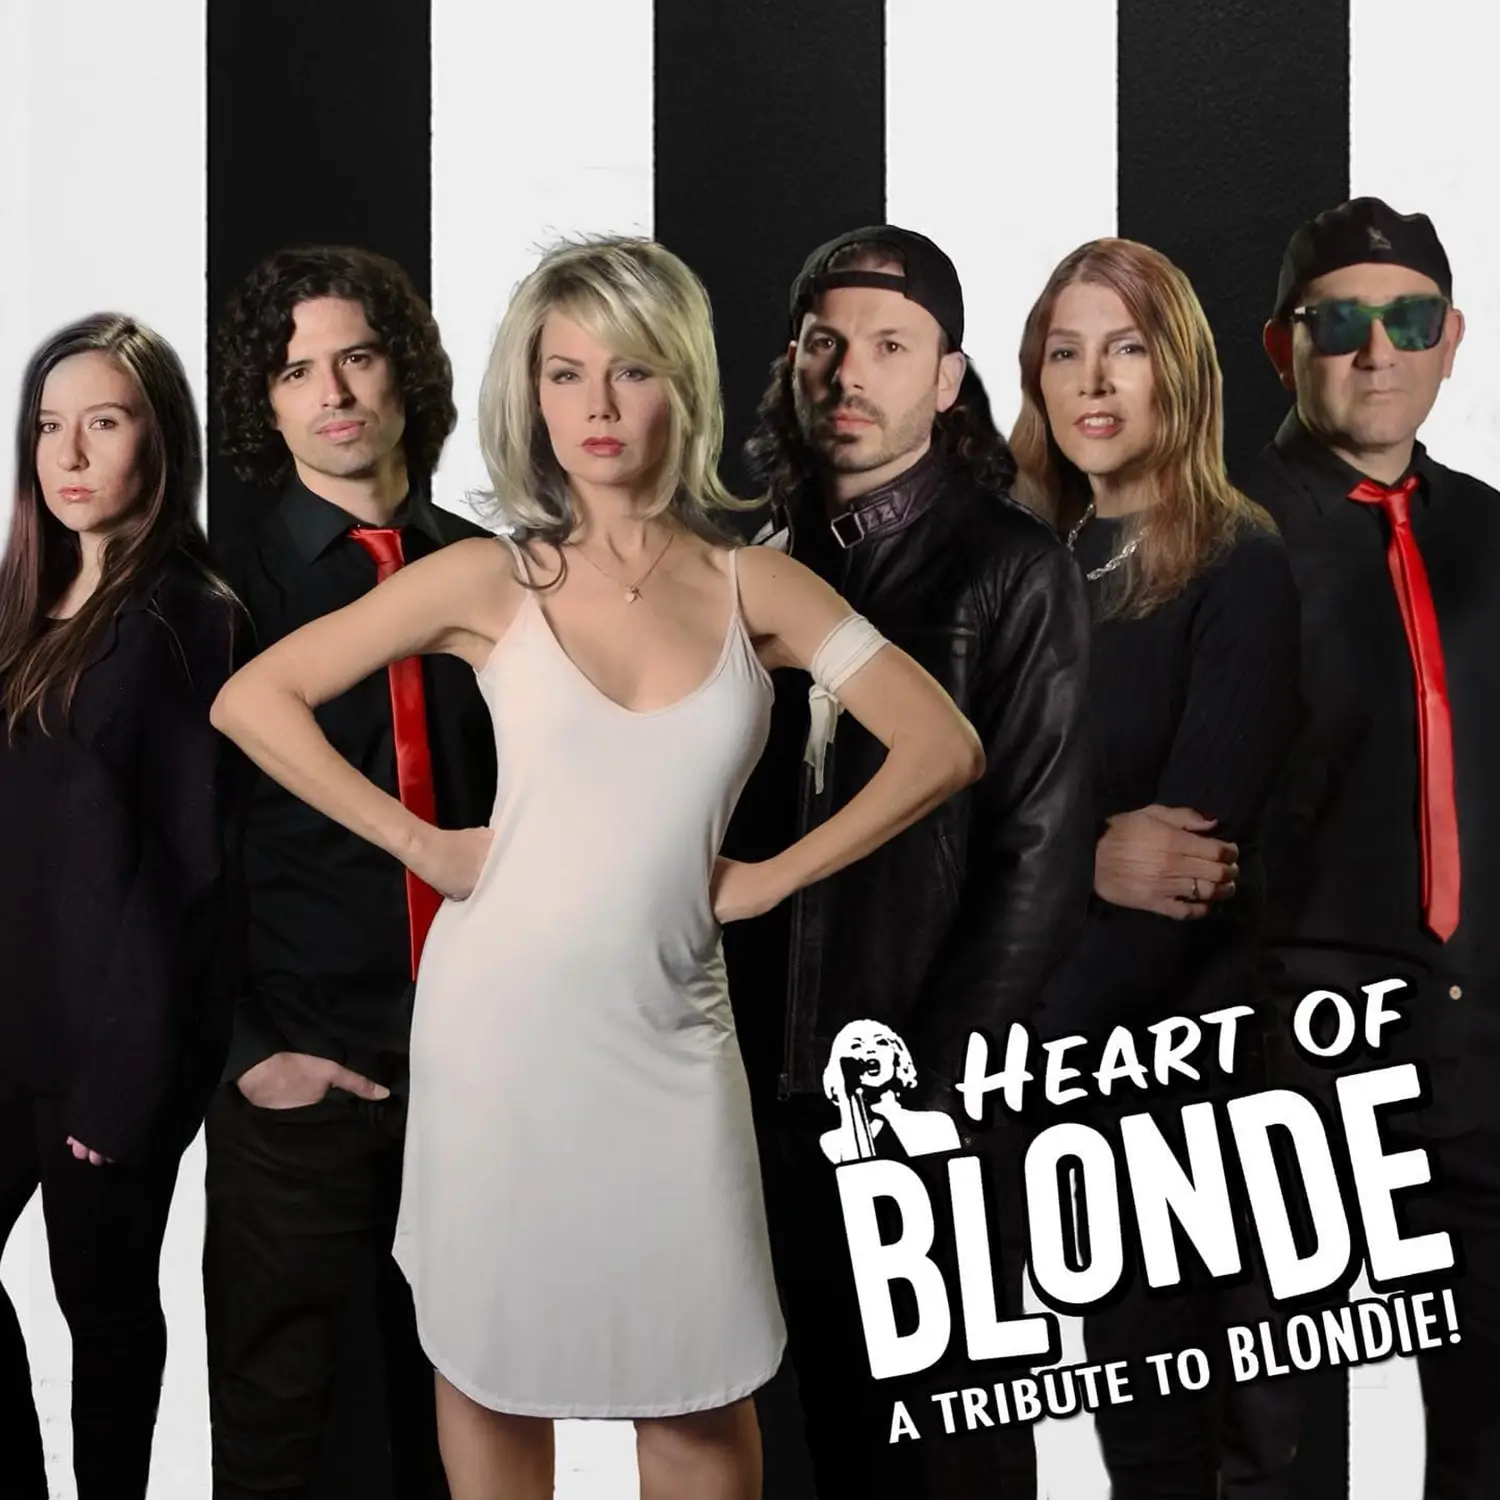 Heart of Blonde Video Reel